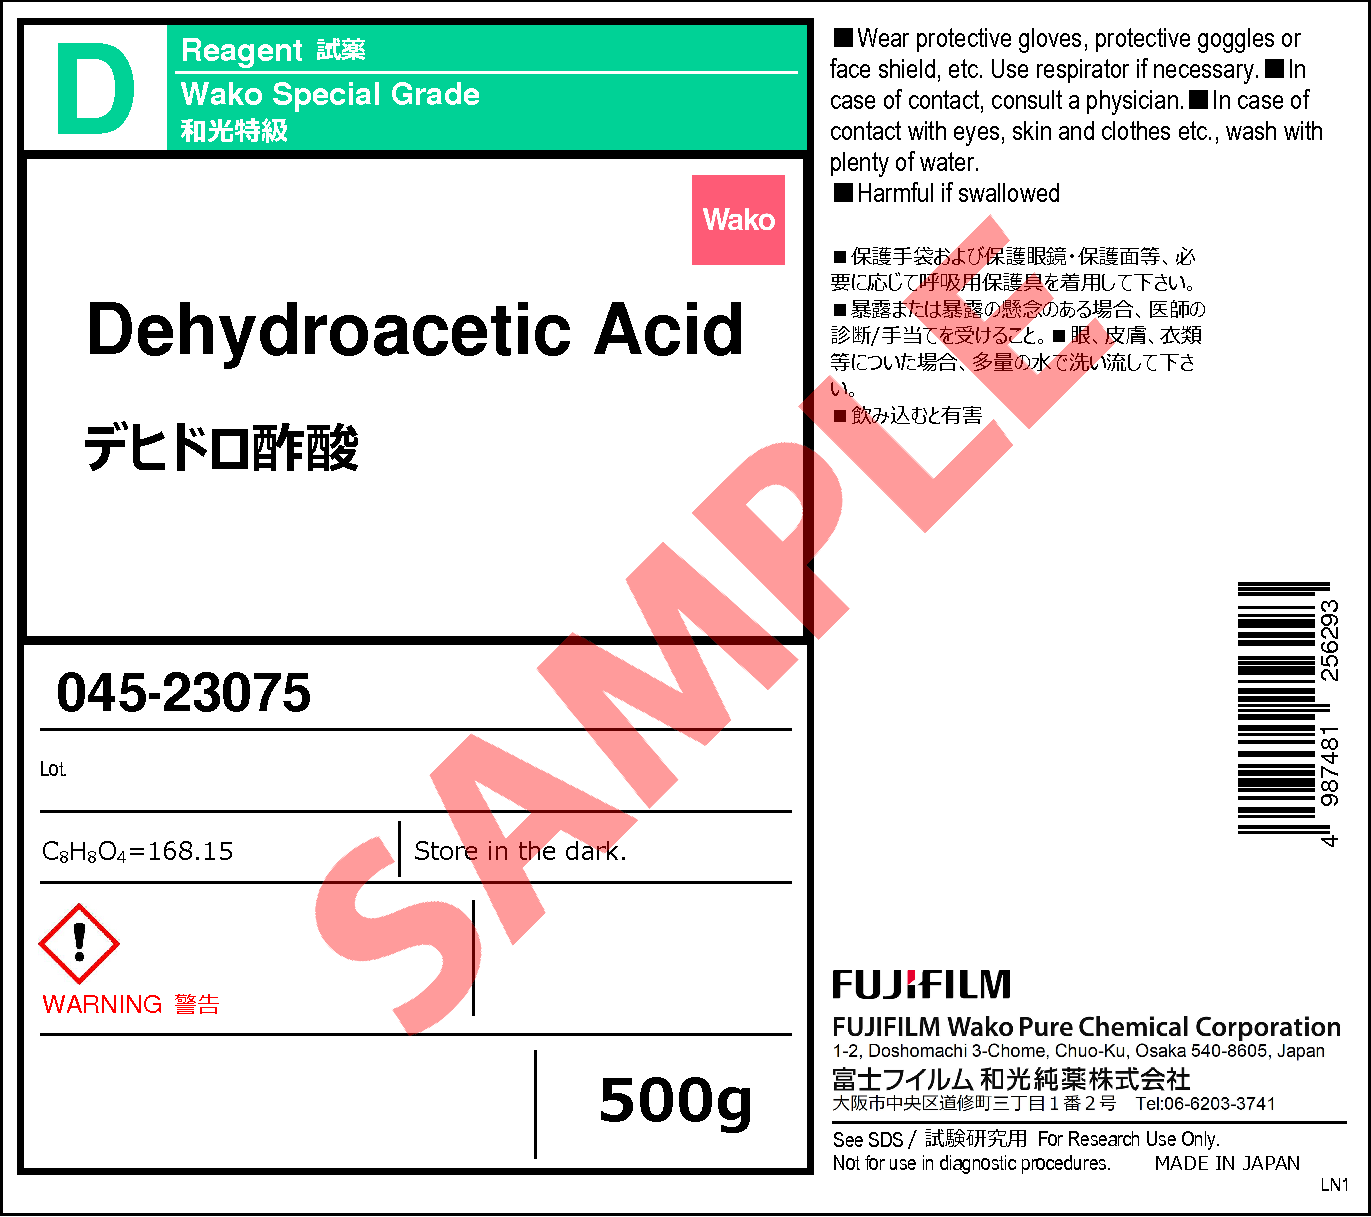 520-45-6・デヒドロ酢酸・Dehydroacetic Acid・043-23071・045-23075 